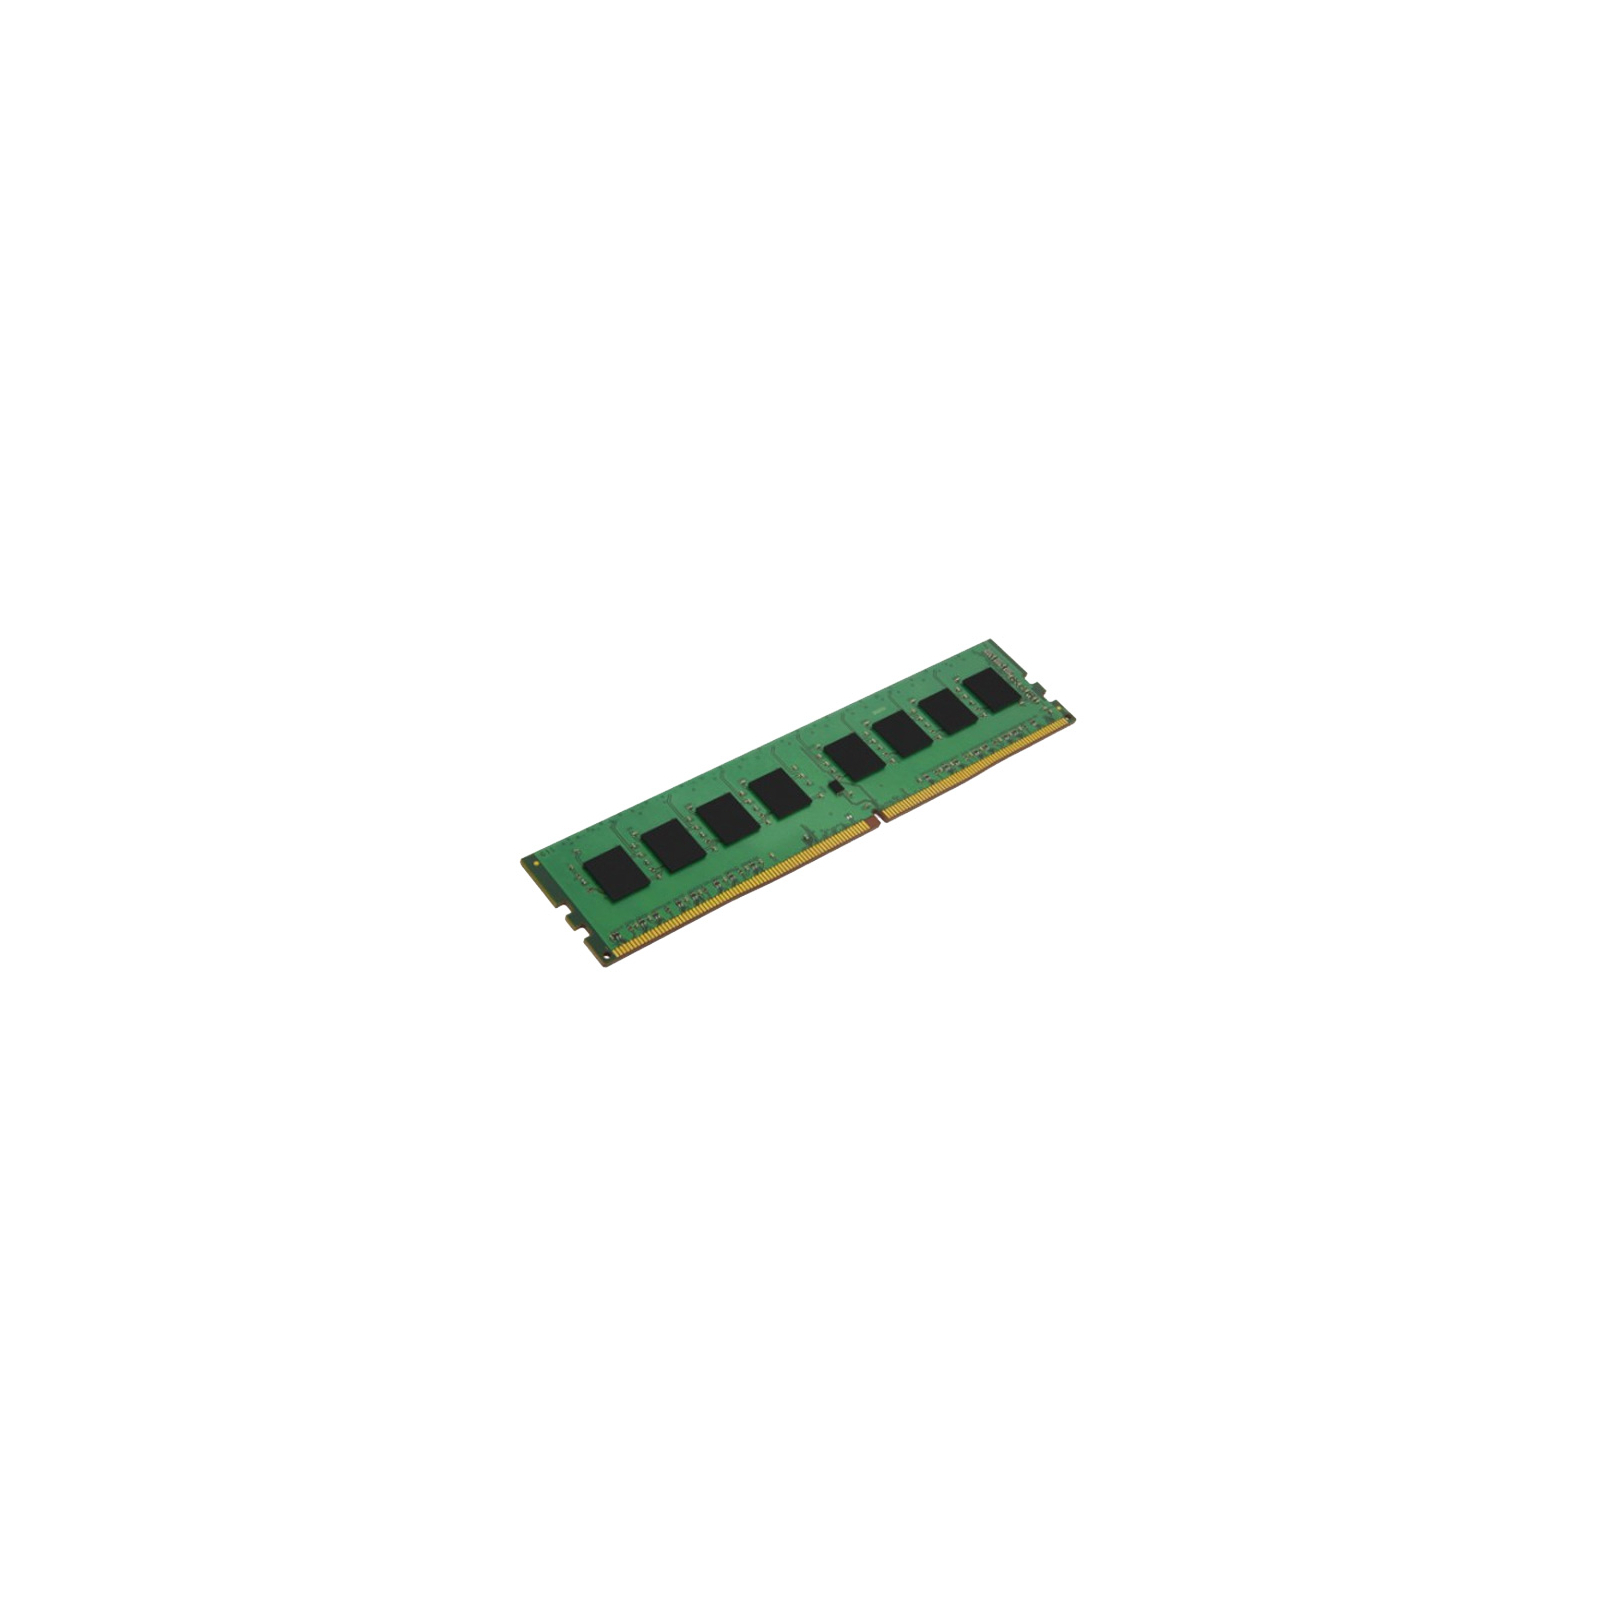 Модуль памяти для сервера DDR4 16GB ECC UDIMM 2400MHz 2Rx8 1.2V CL17 Kingston (KVR24E17D8/16MA)